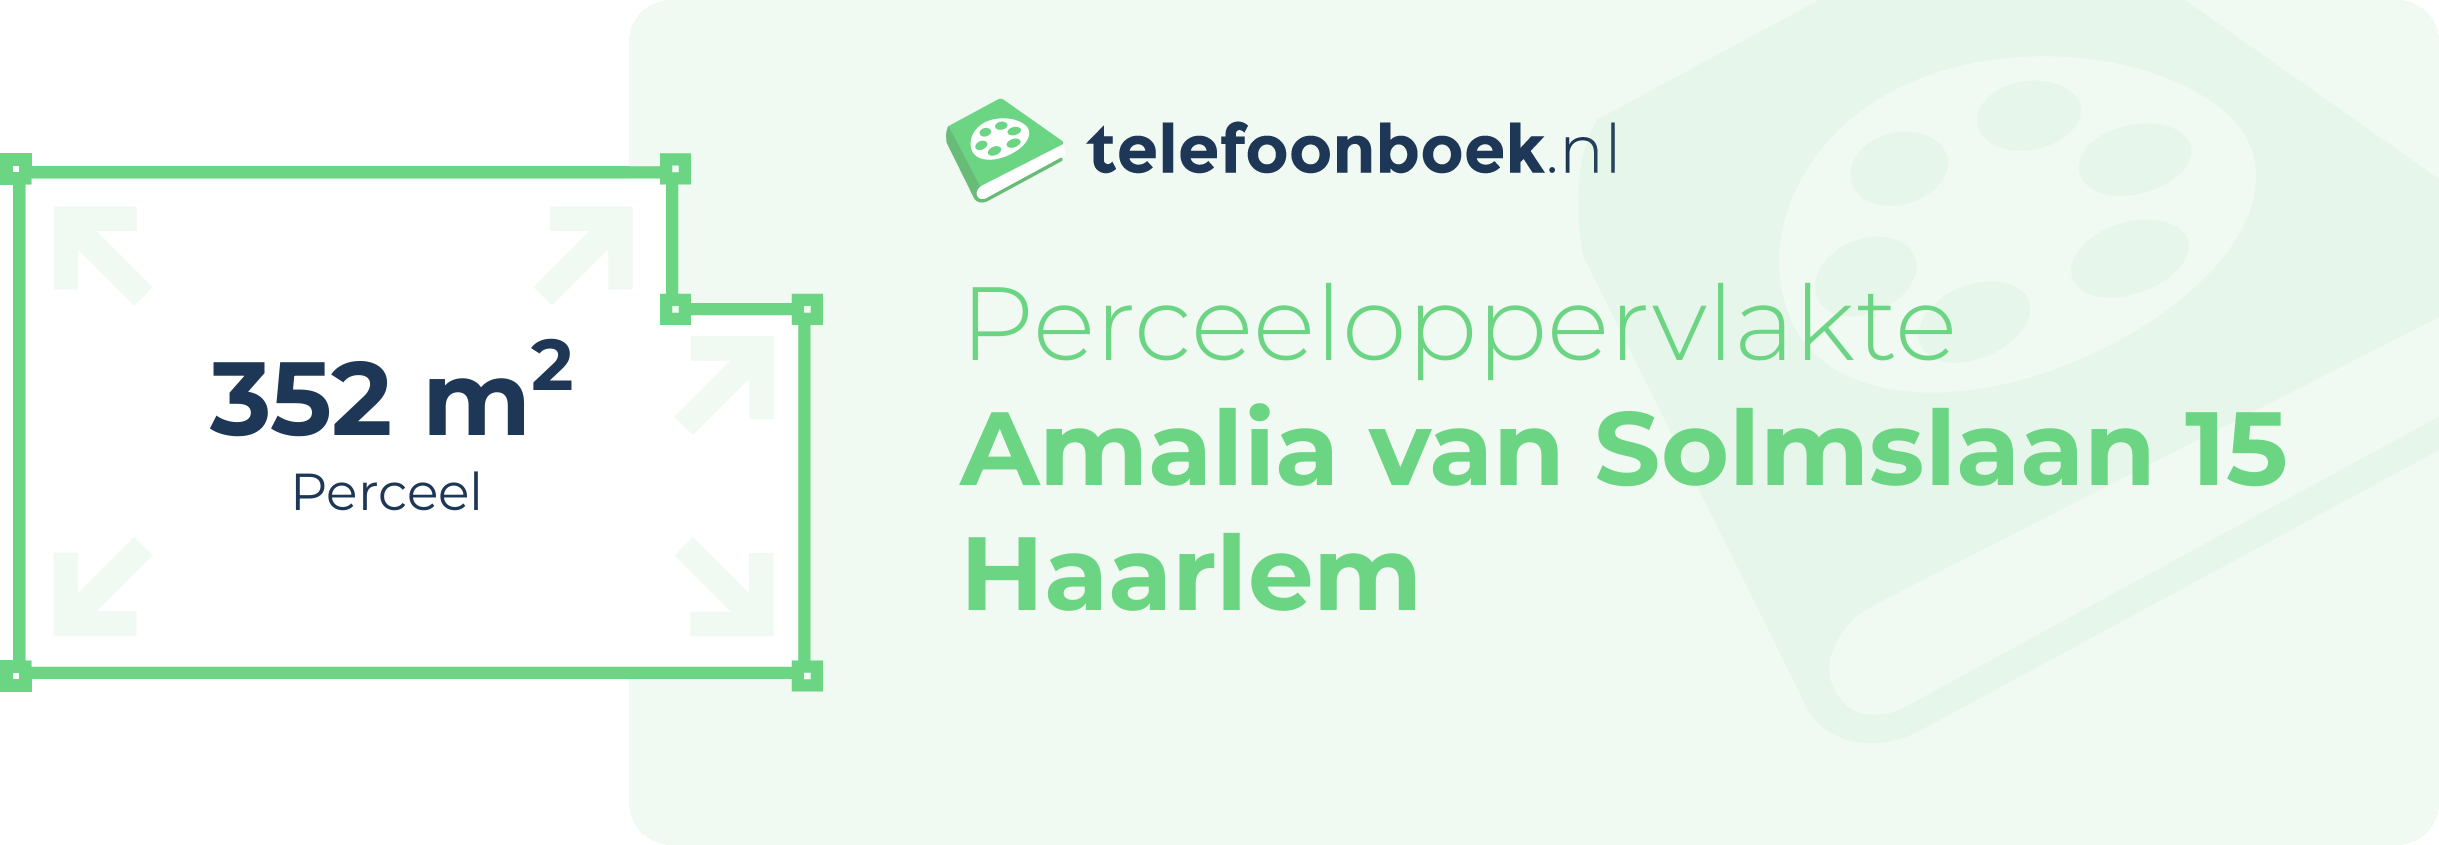 Perceeloppervlakte Amalia Van Solmslaan 15 Haarlem